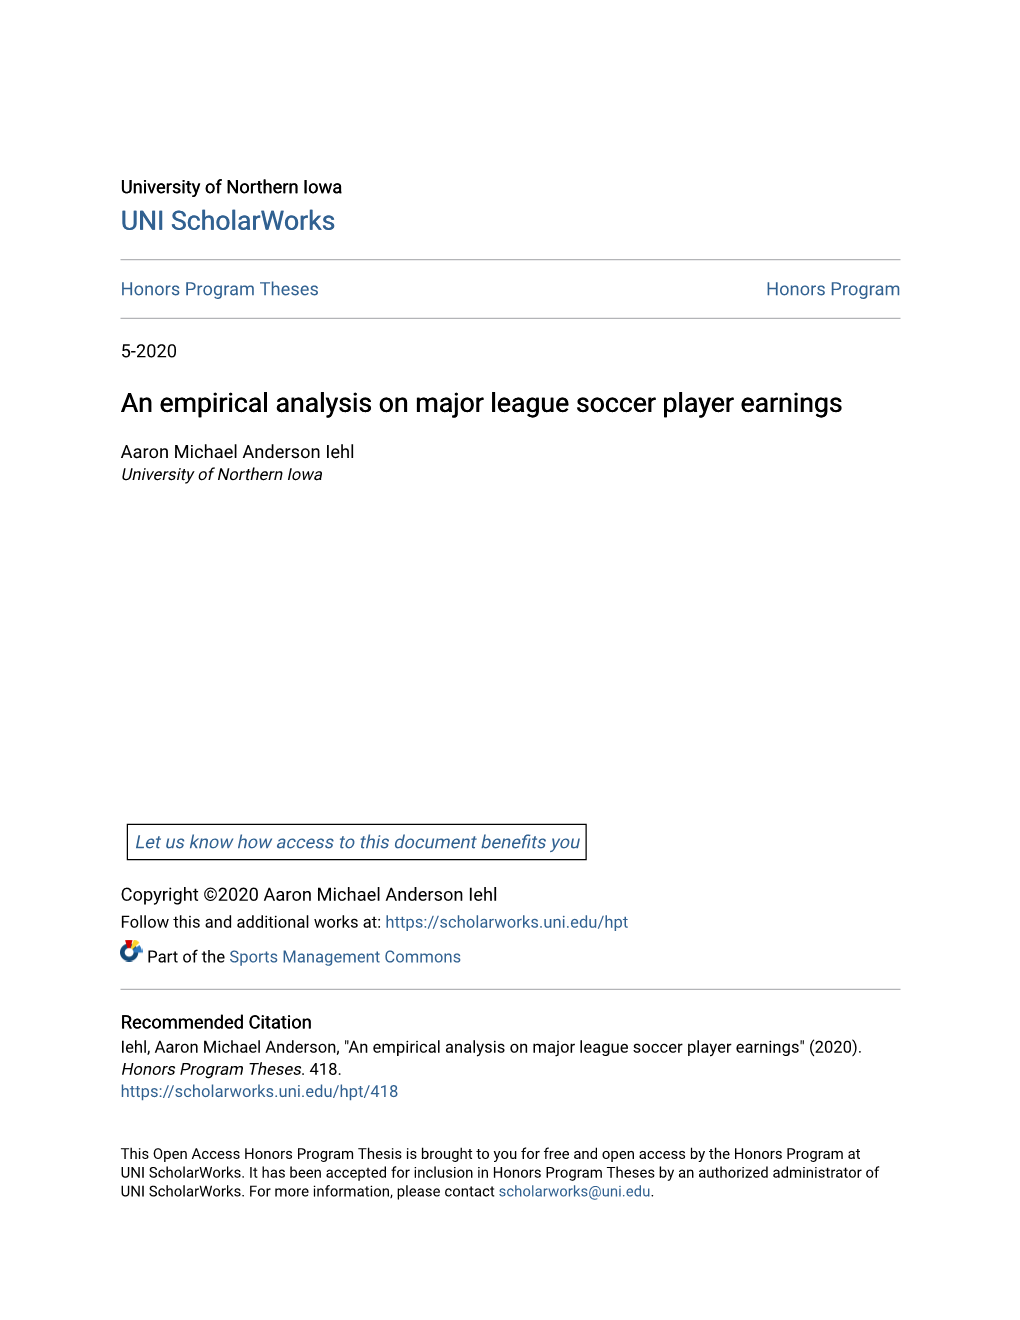 An Empirical Analysis on Major League Soccer Player Earnings